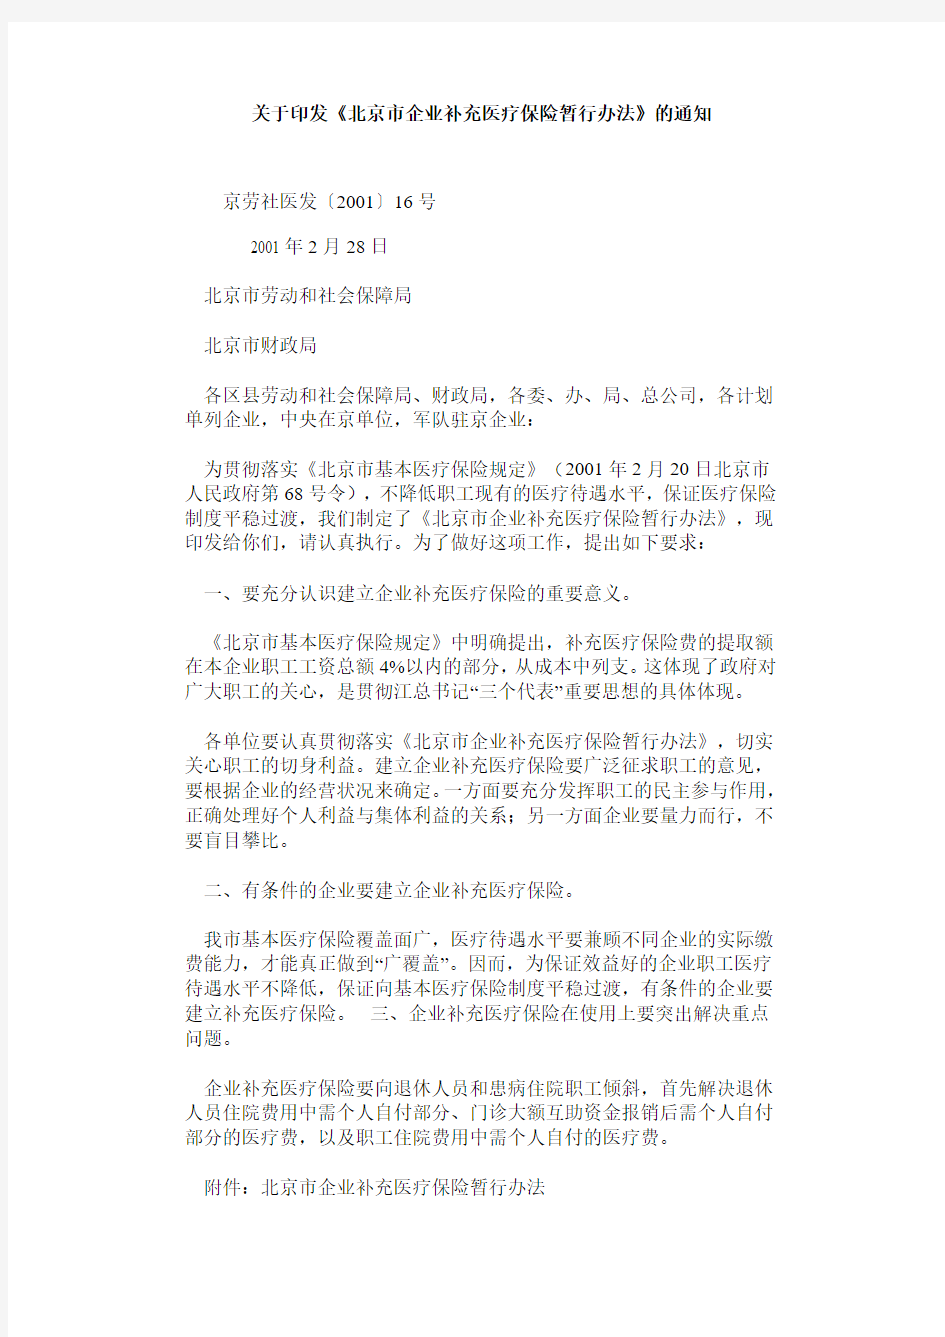 北京市企业补充医疗保险暂行办法